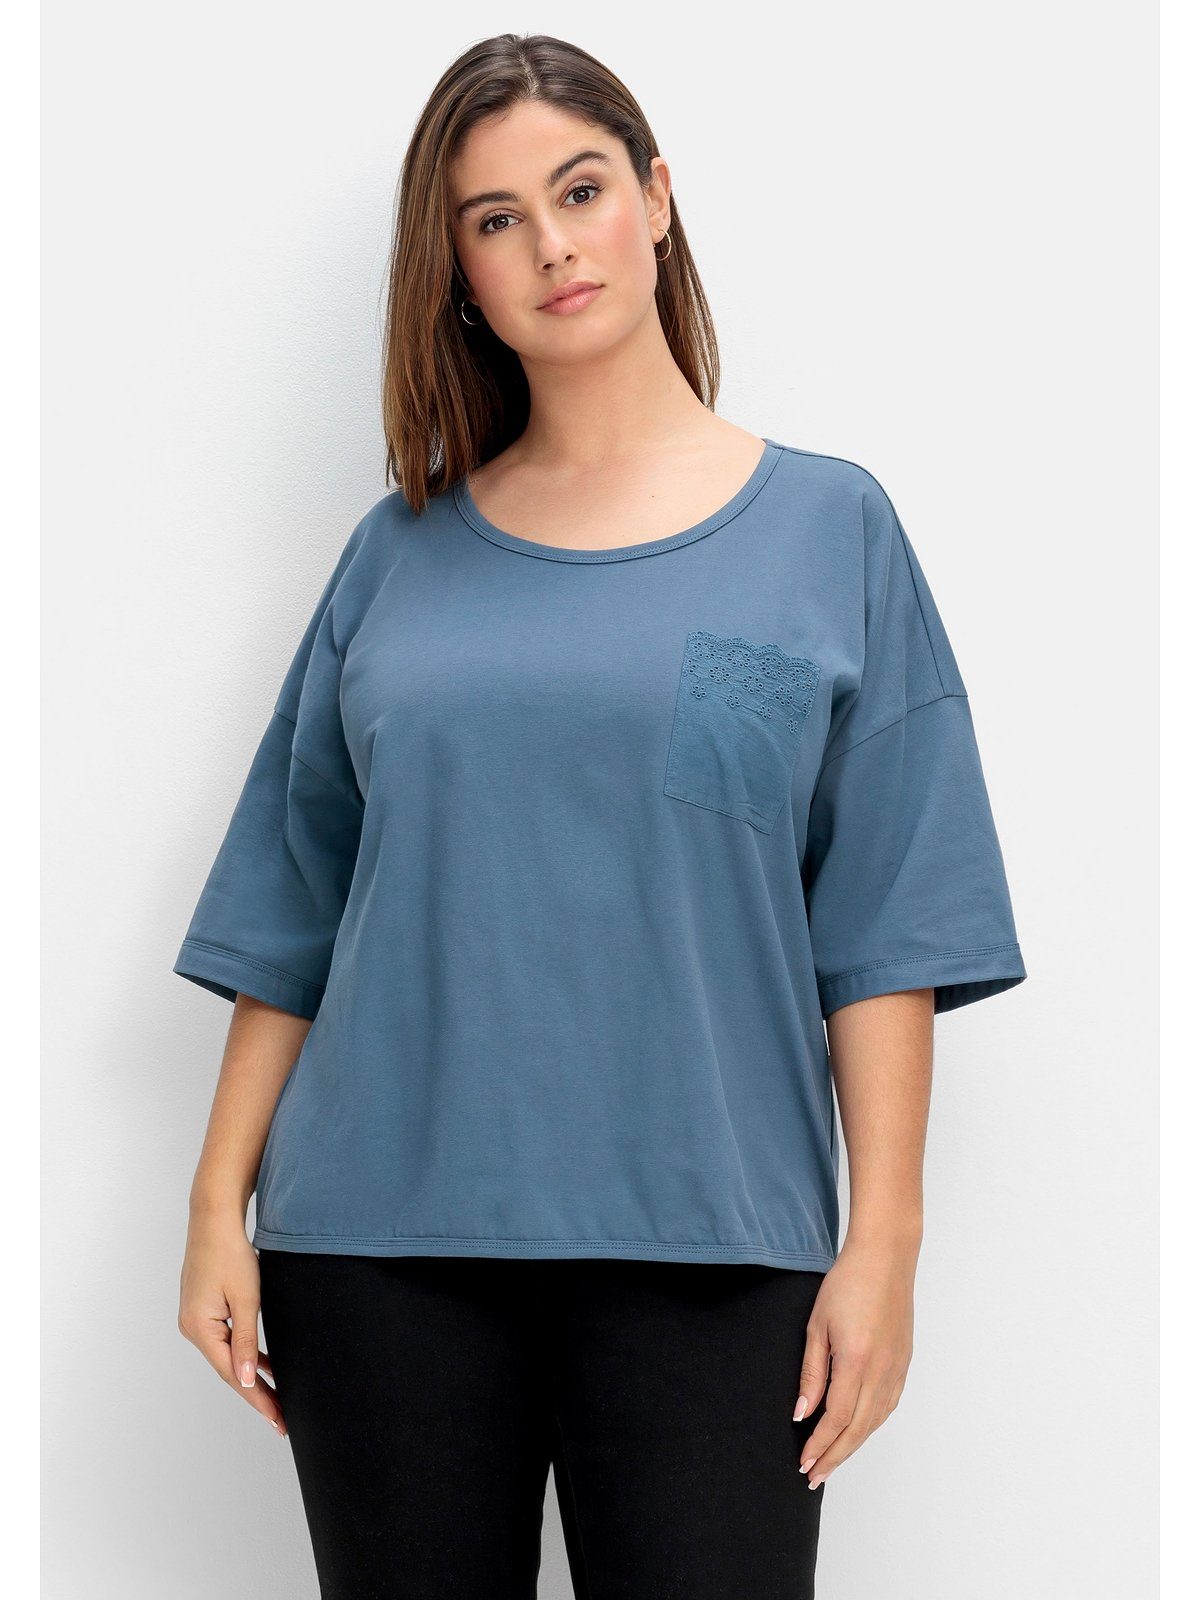 Sheego T-Shirt Große Größen mit Brusttasche aus Spitze taubenblau